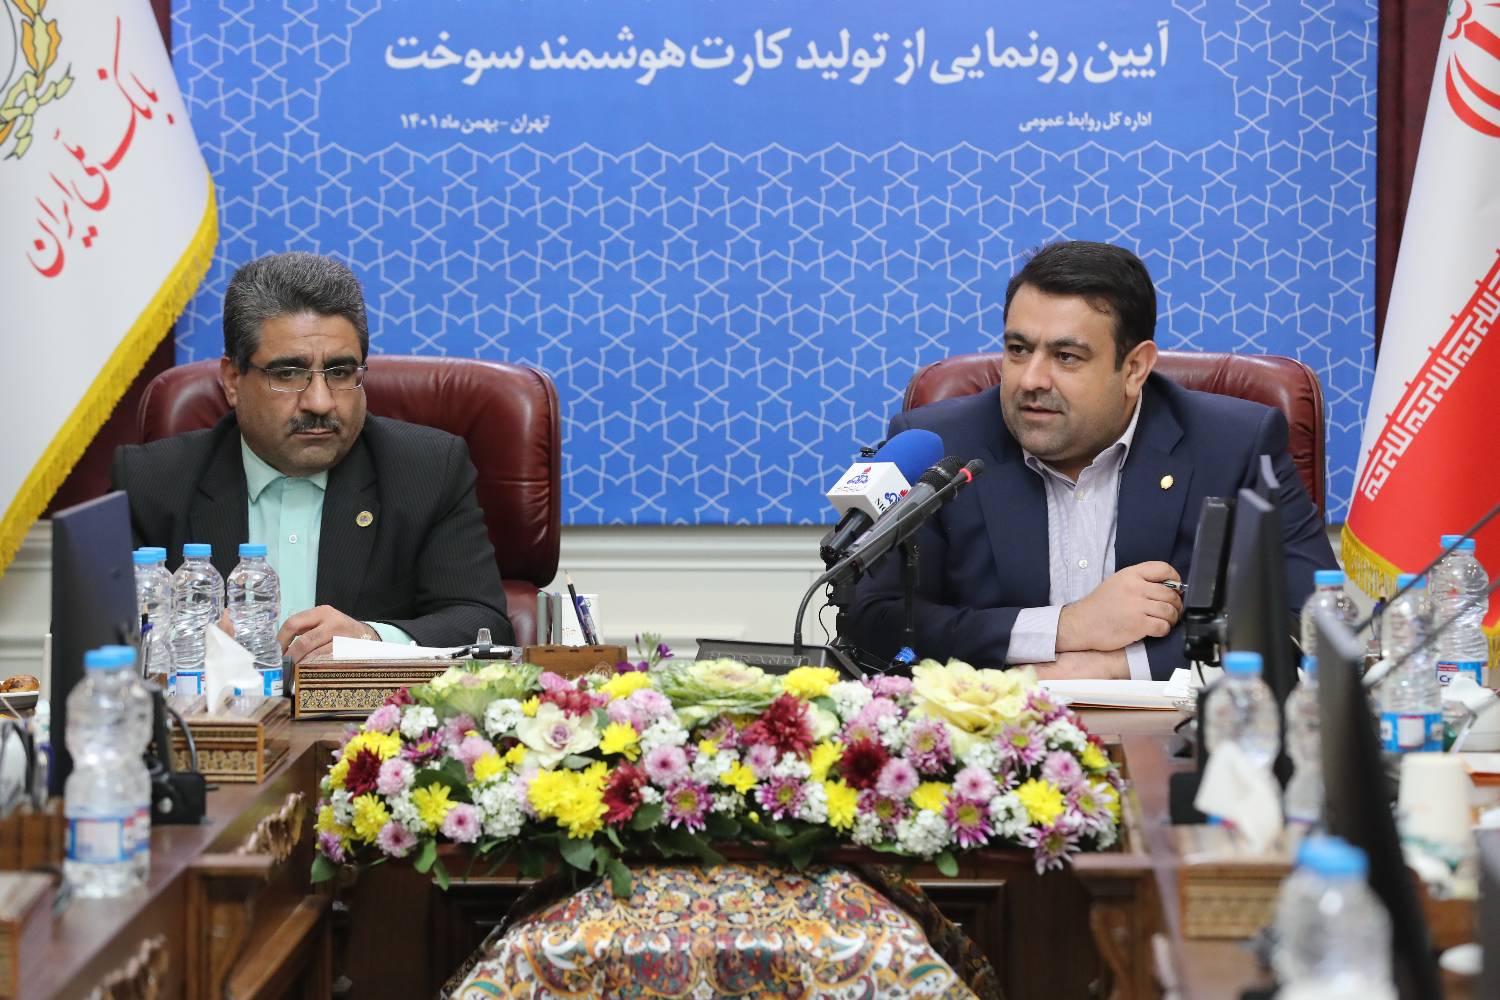 بانک ملی ایران، کشور را از واردات کارت های هوشمند سوخت بی نیاز کرد